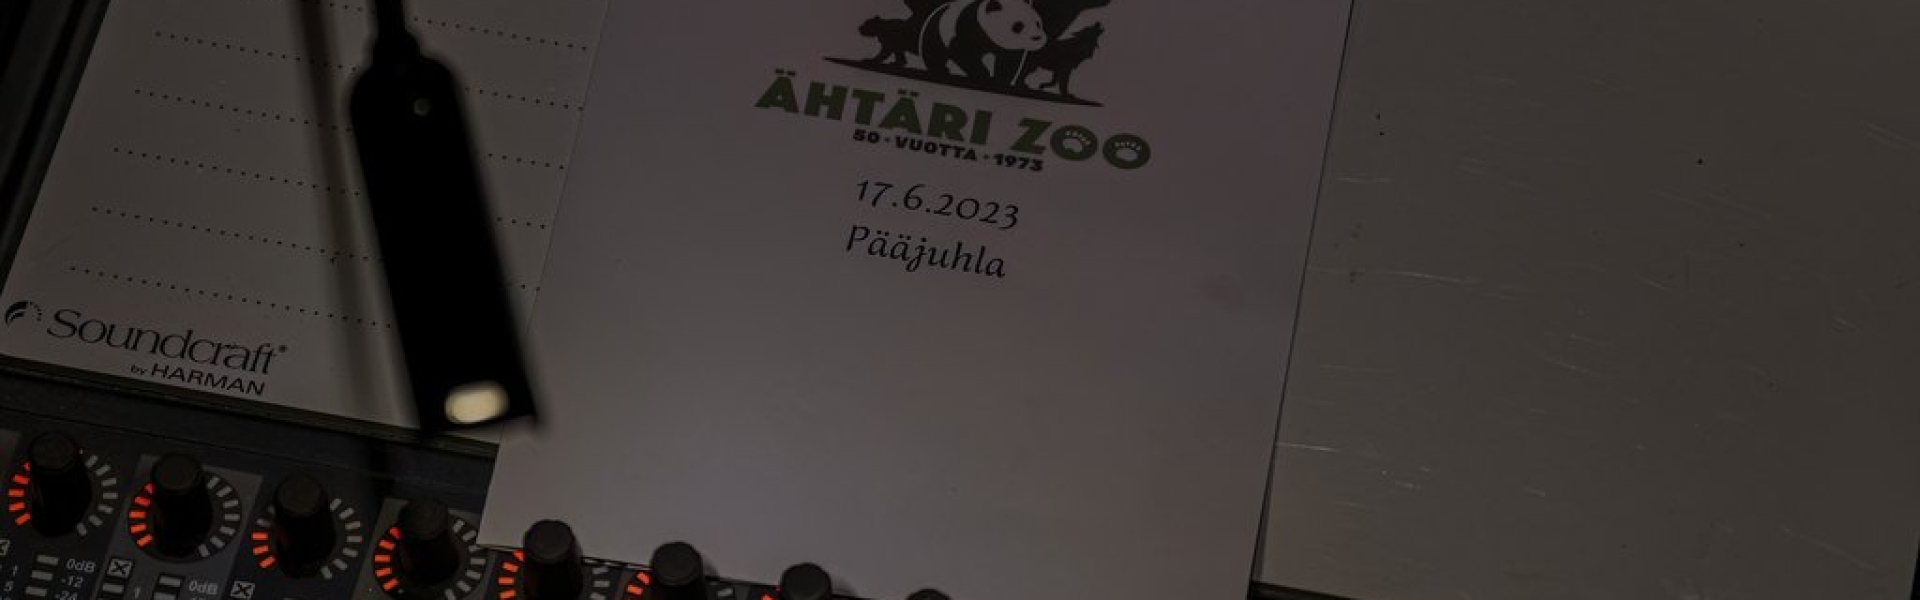 Ähtäri Zoon 50-vuotispääjuhla